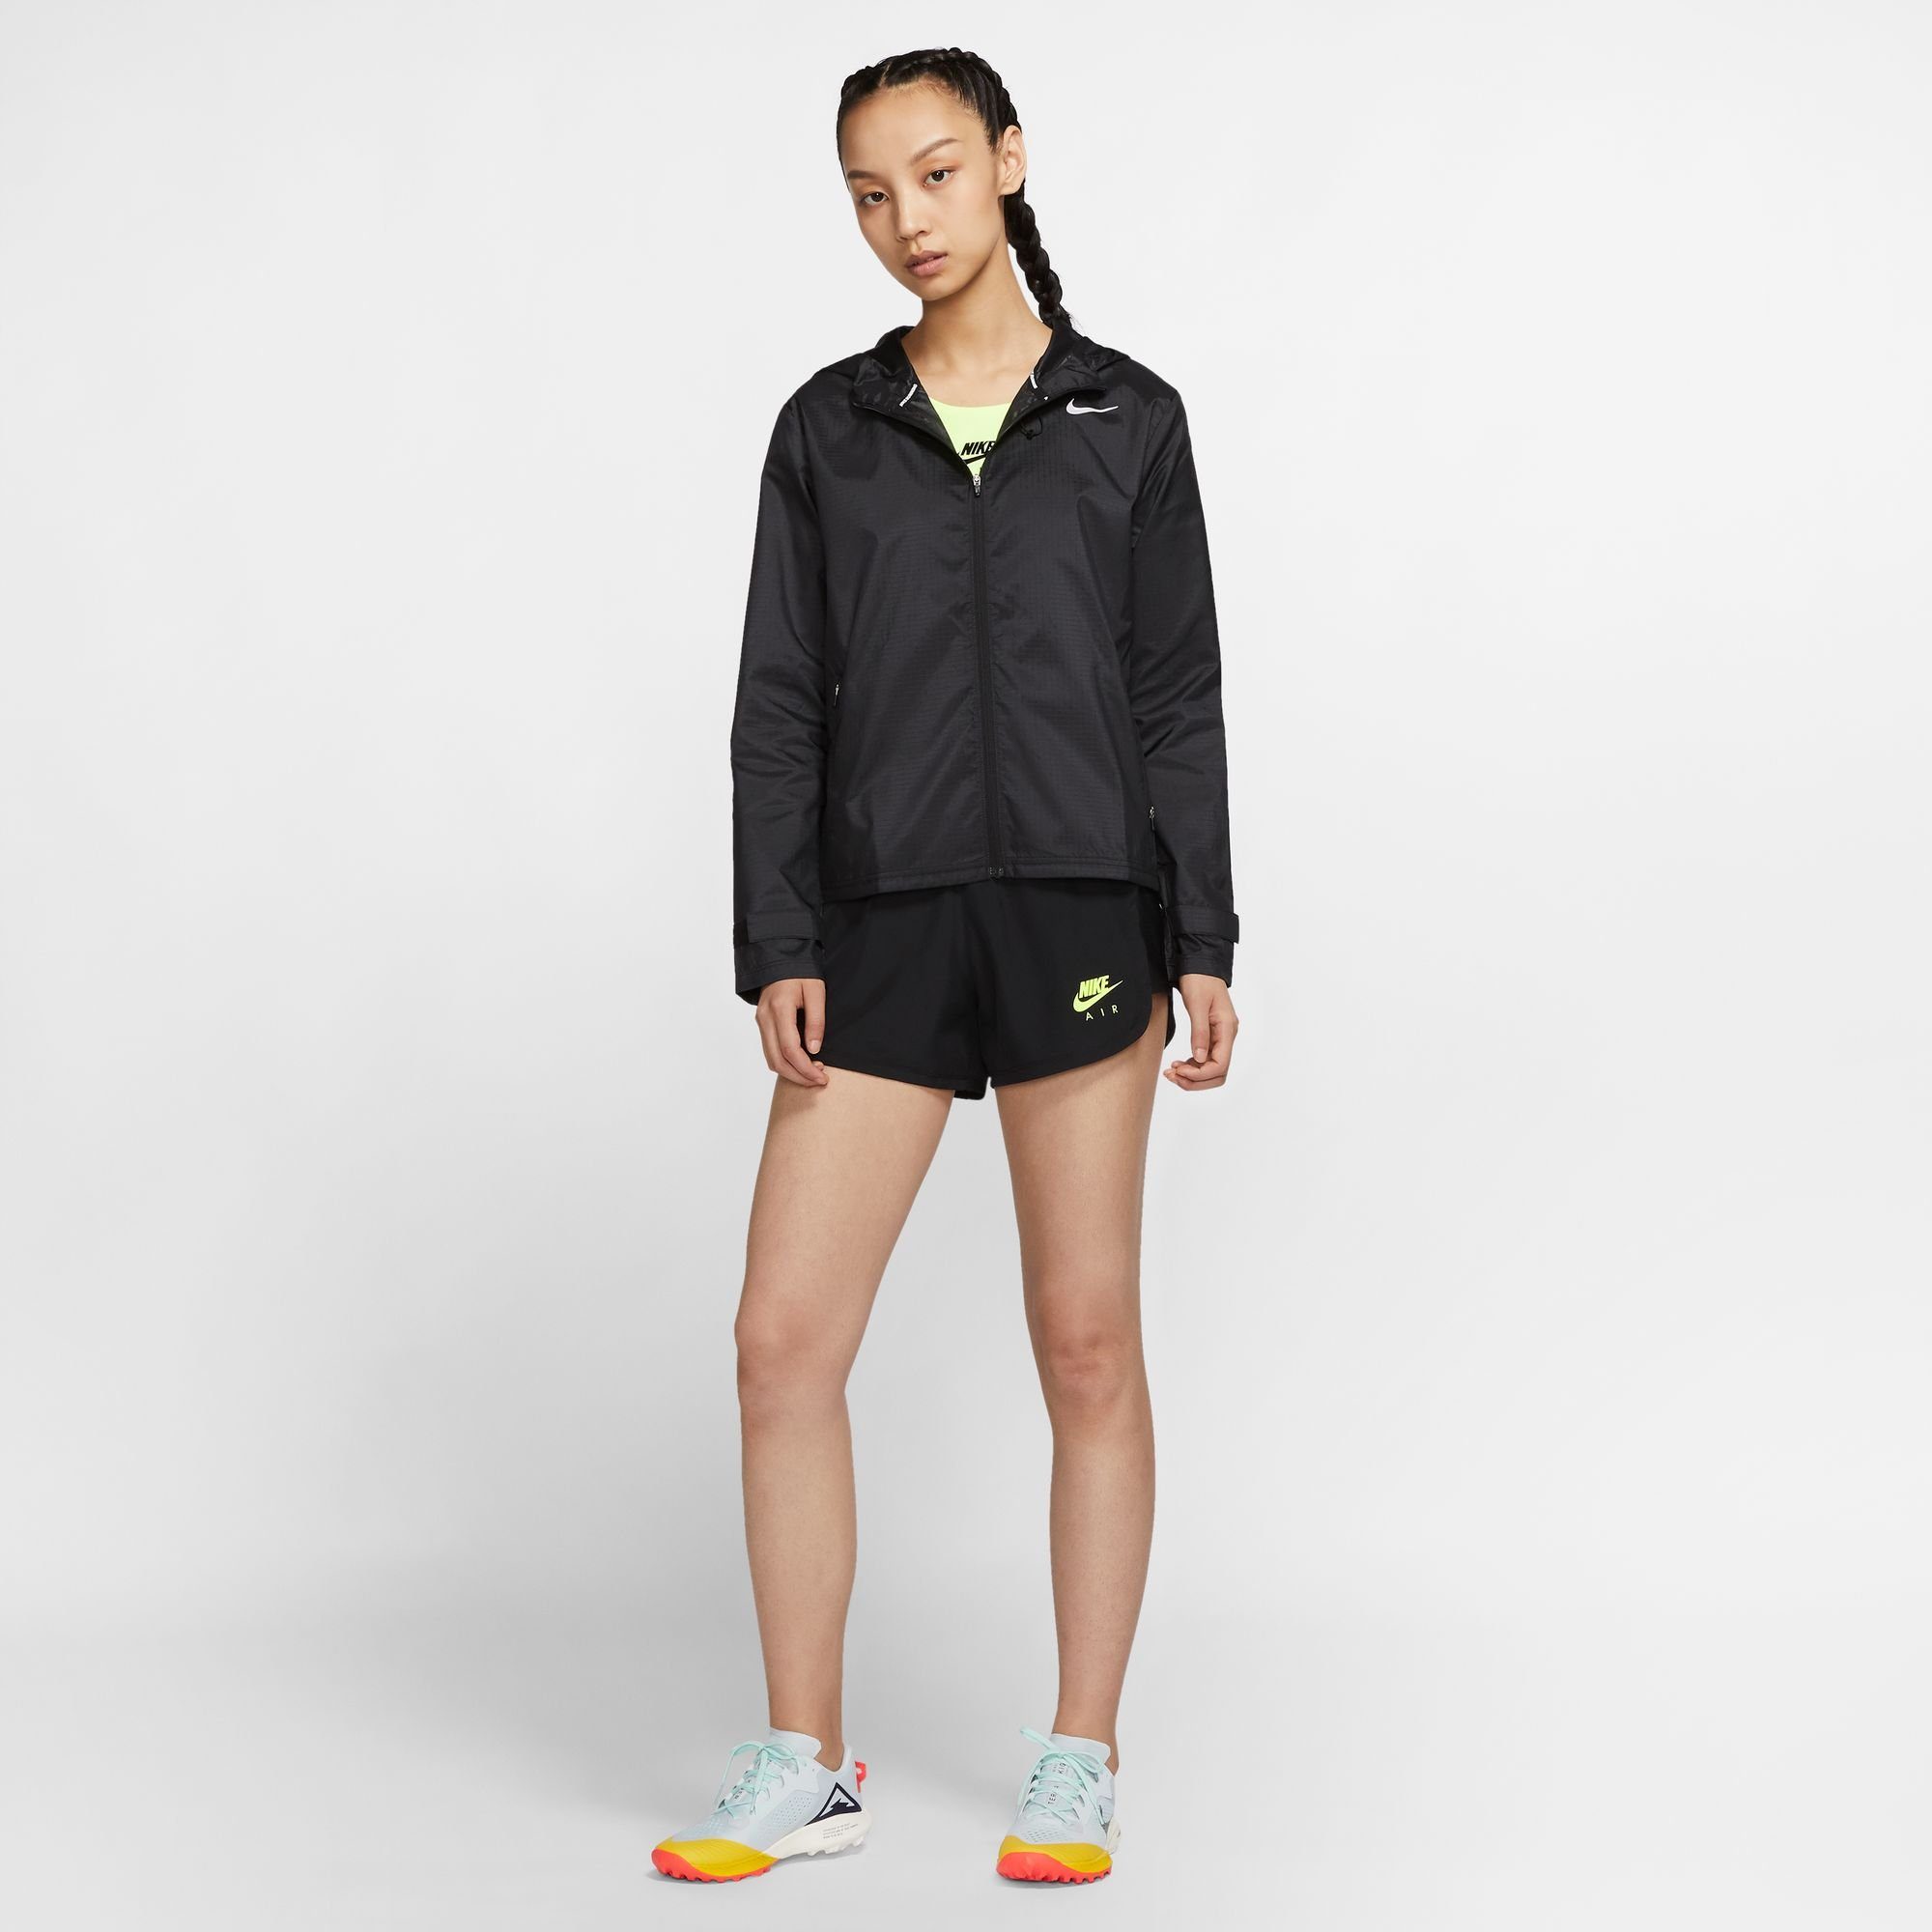 Nike Laufjacke Women's Running schwarz Jacket Essential